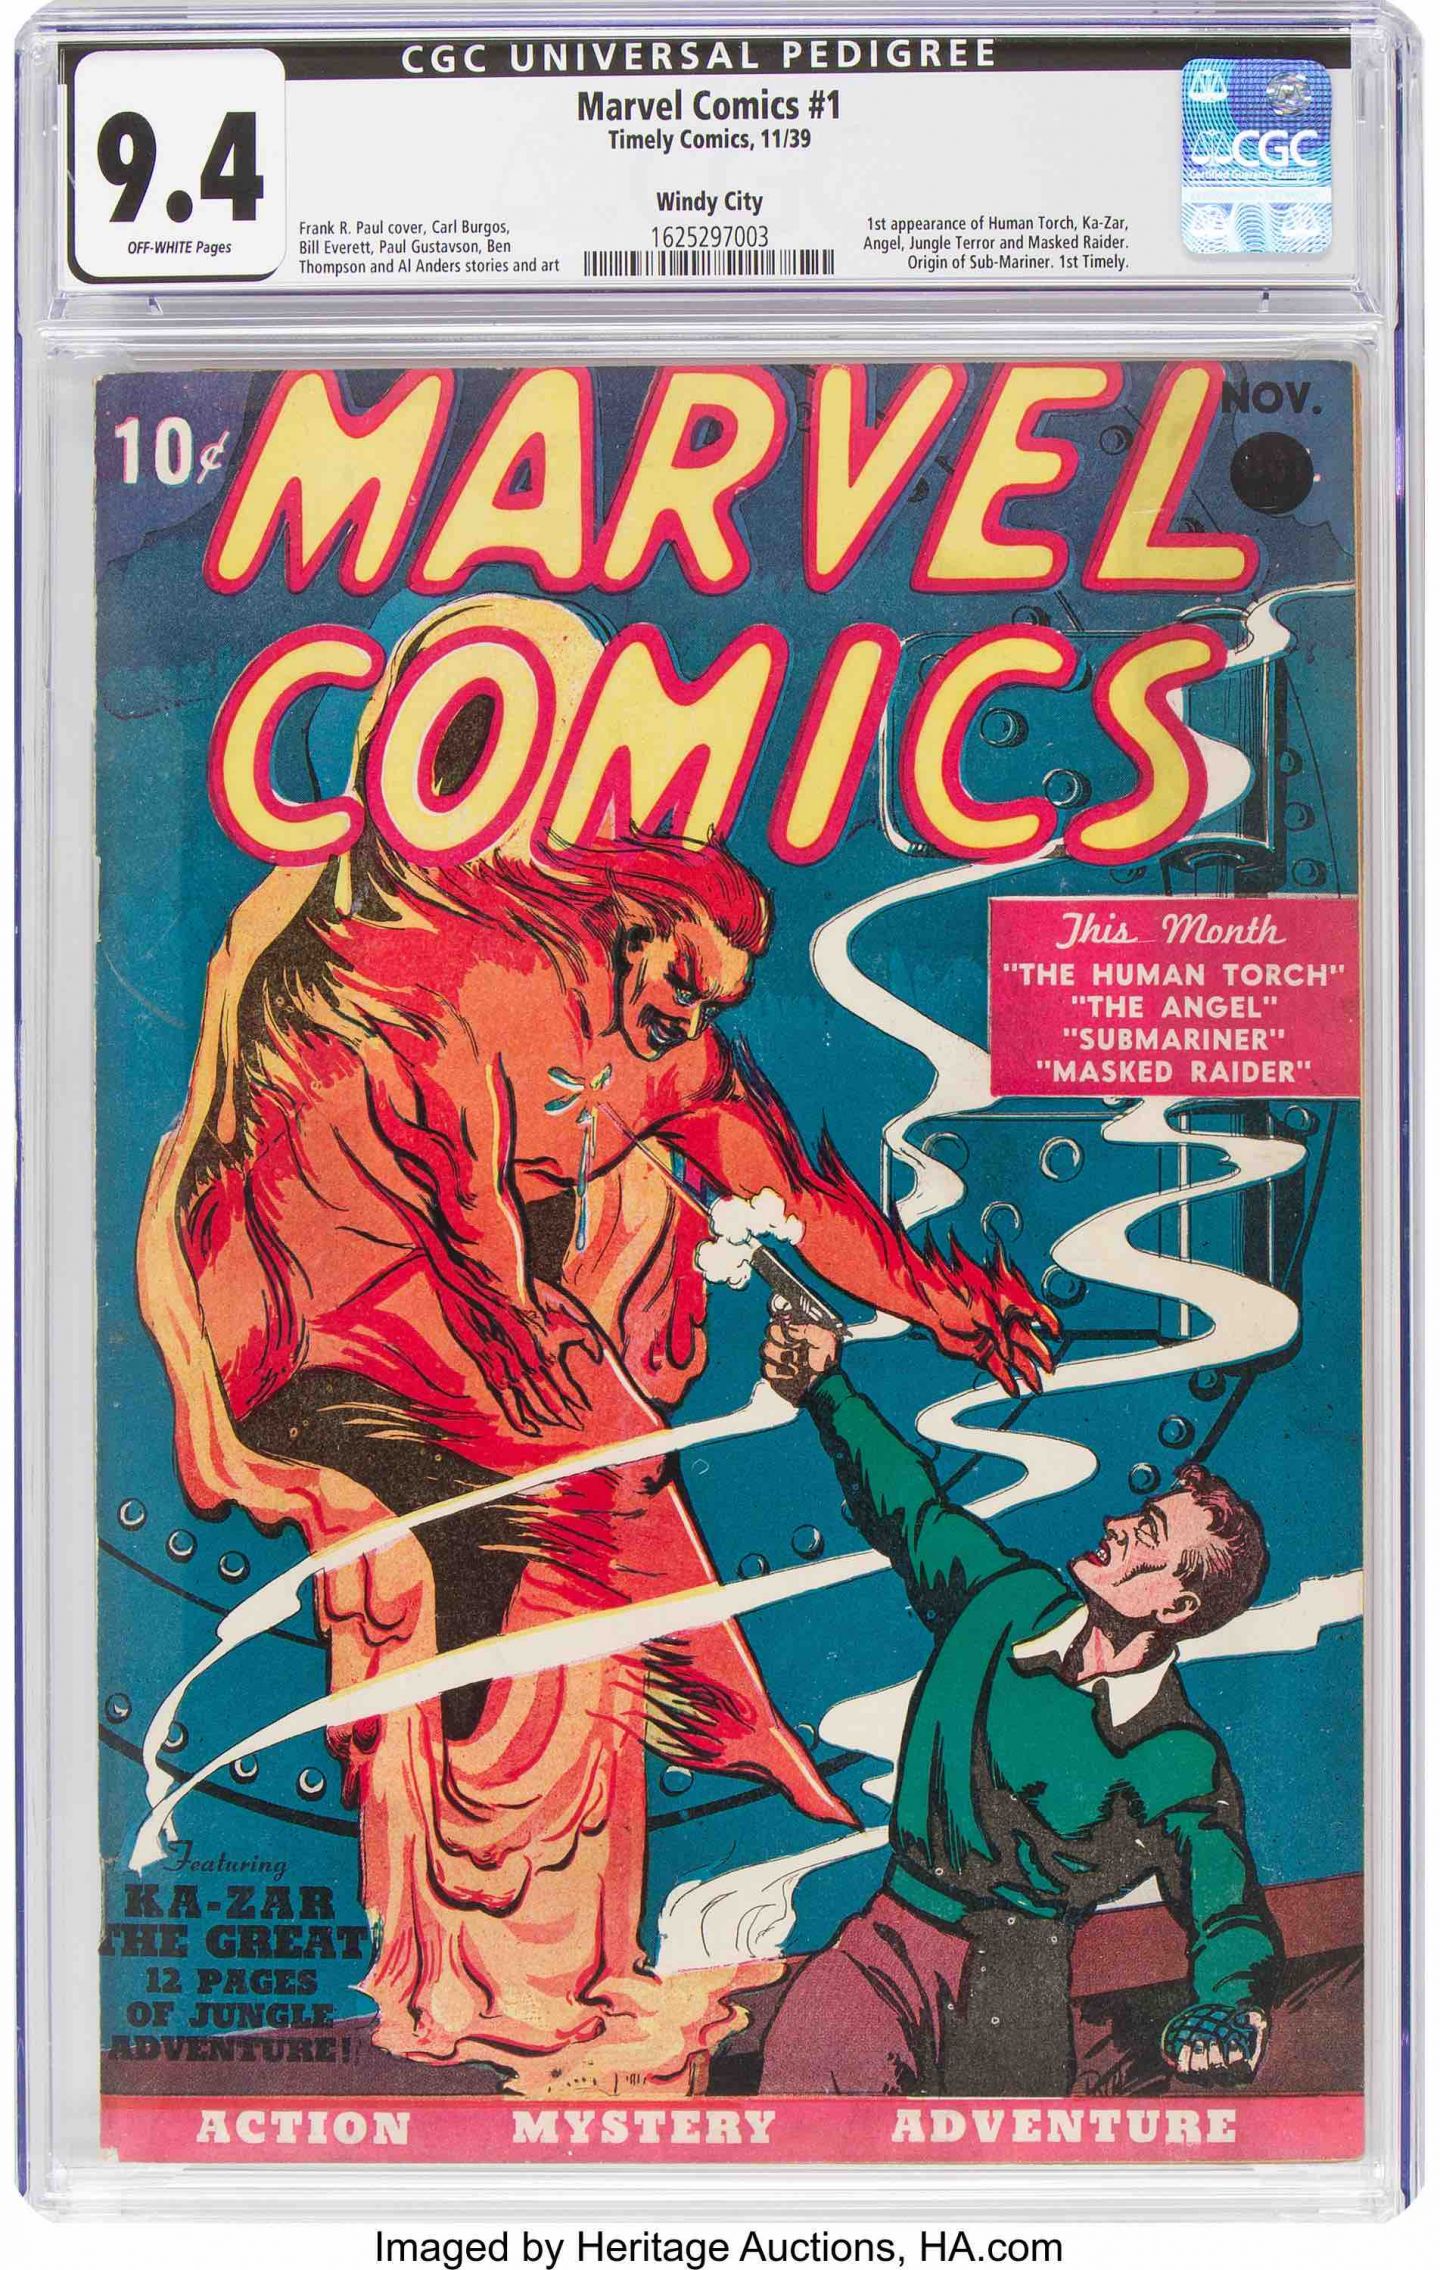 El primer número de Marvel Comics se vendió por una cifra récord

